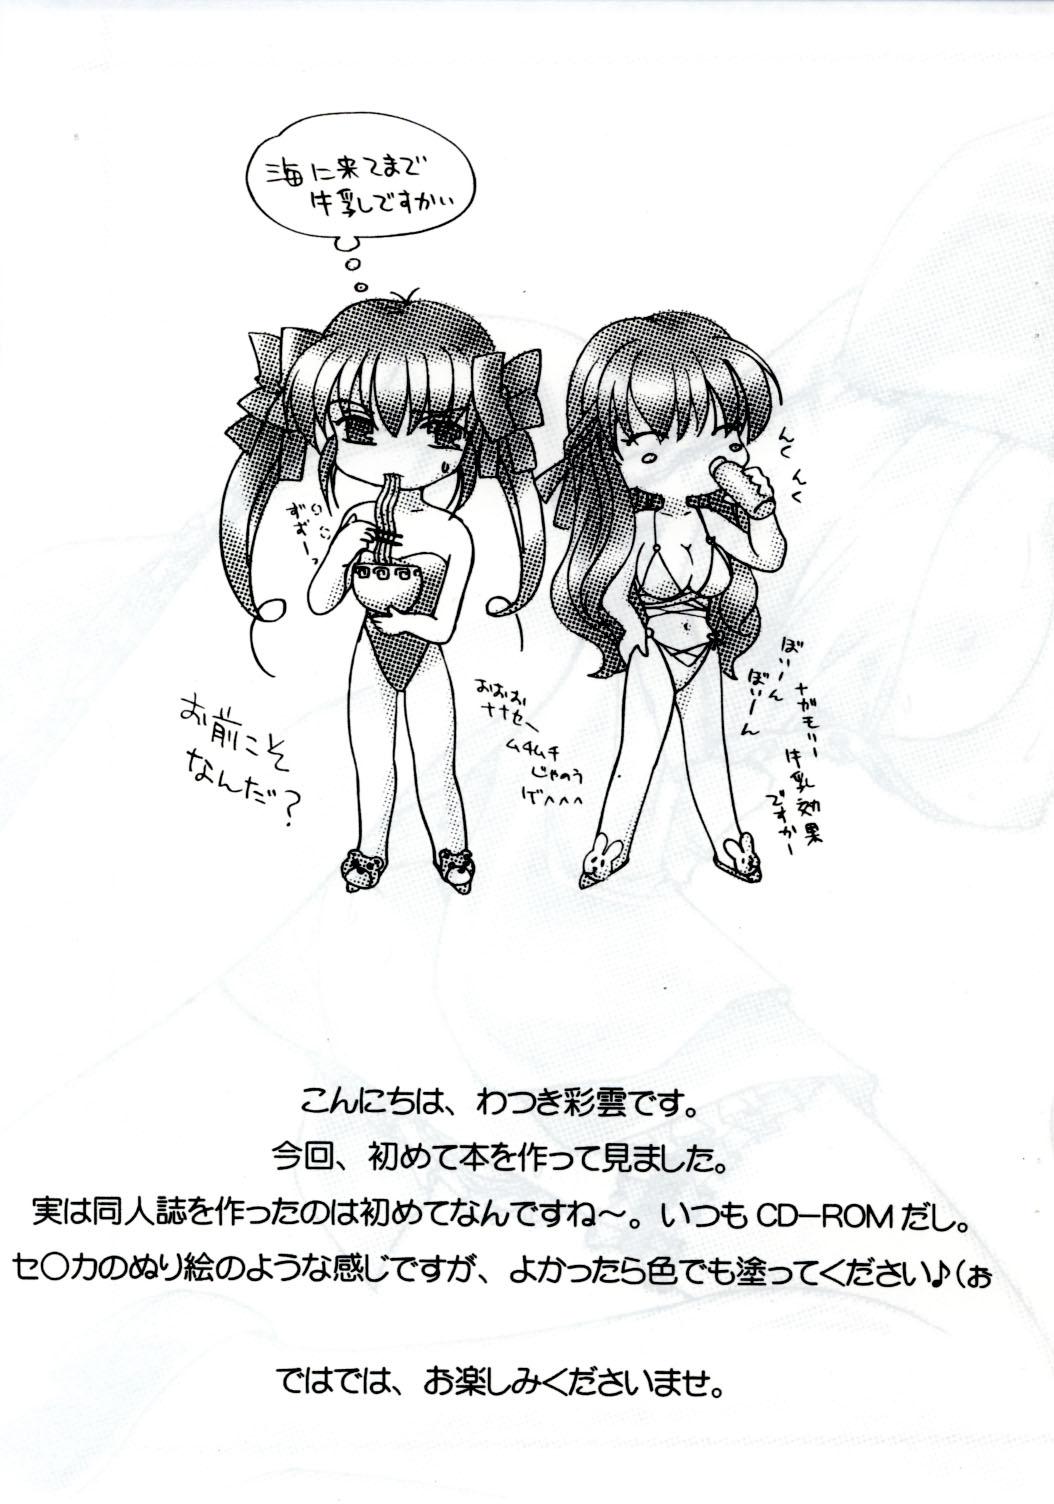 Man Nanana no Na - One kagayaku kisetsu e HD - Page 2